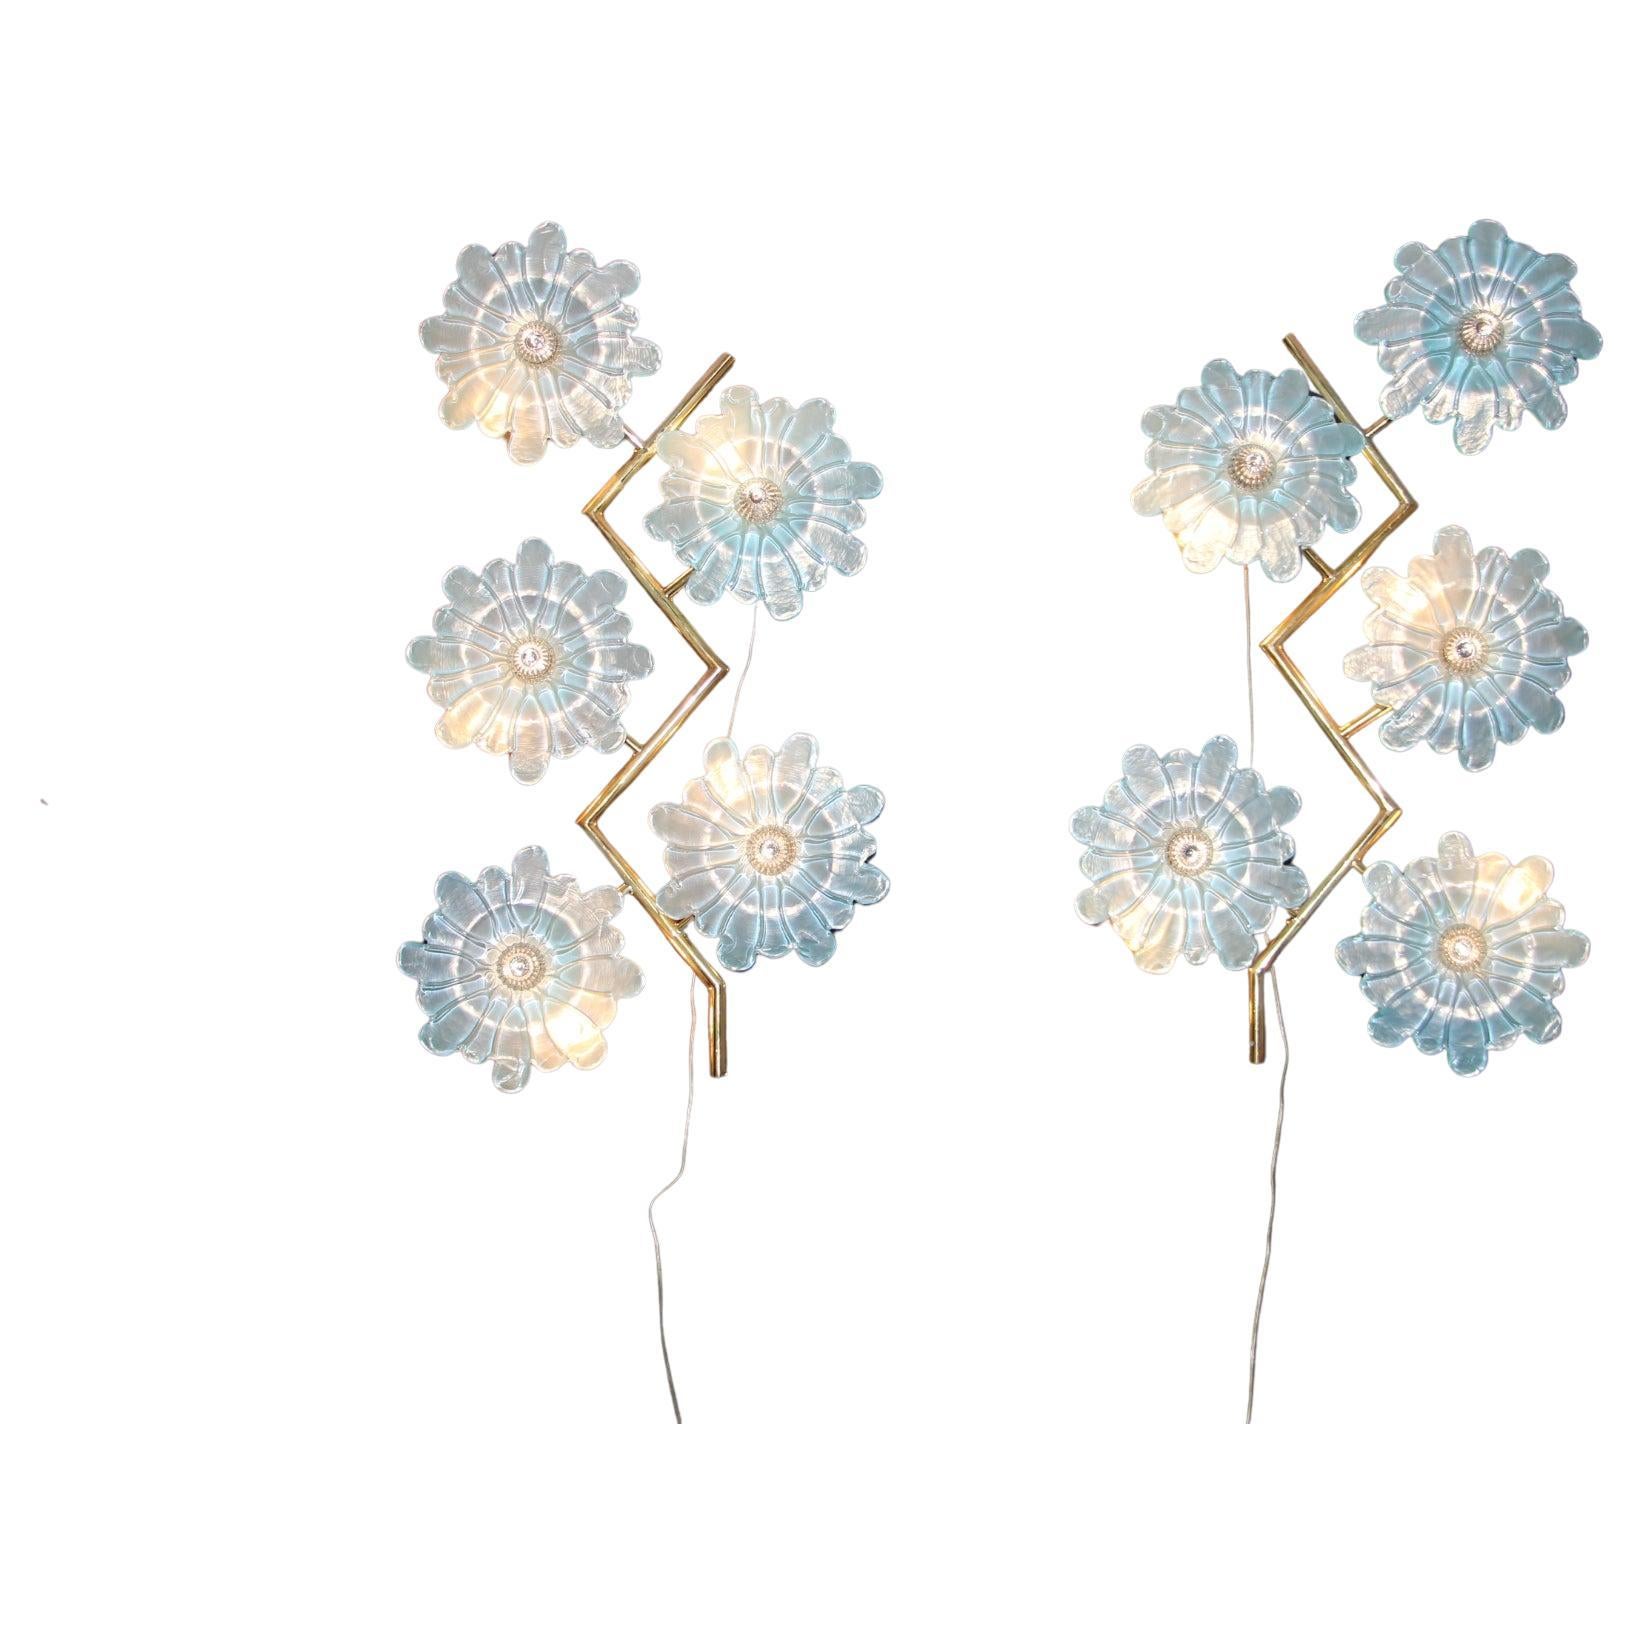 Dieses schöne Paar von Wandleuchten verfügt über Zick-Zack-Messing-Rahmen und 5 schillernden blauen Murano-Glas flowers.these Blumen wurden von Hand in Murano und ihre Mitte Stück ist aus einem Kristall Farbe Glas studs.they sind sehr romantisch und